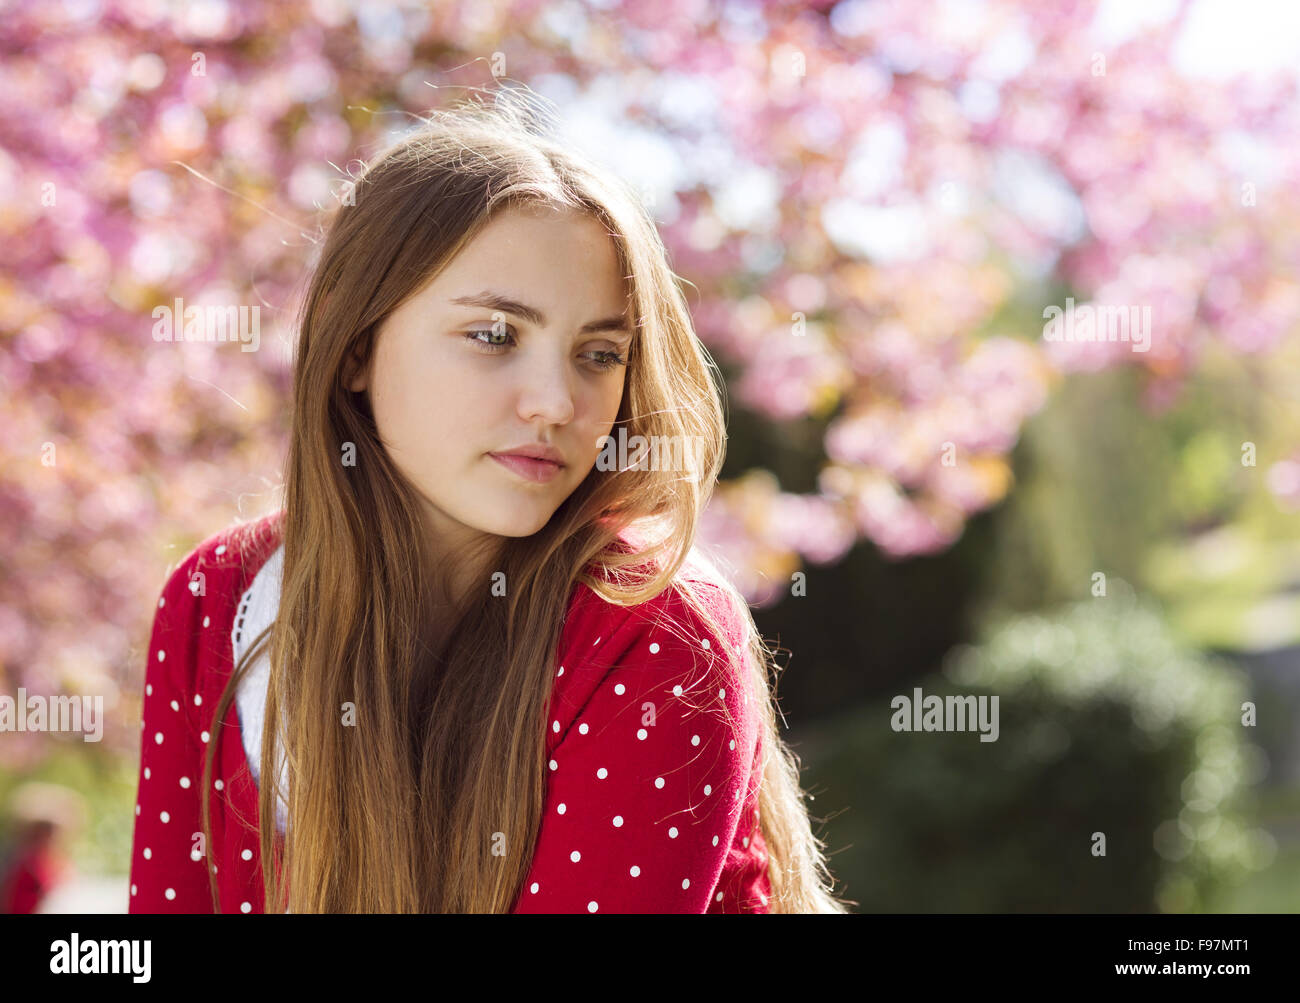 Belle fille de cardigan rouge gisant au printemps relaxant jardin avec arbres en fleurs Banque D'Images